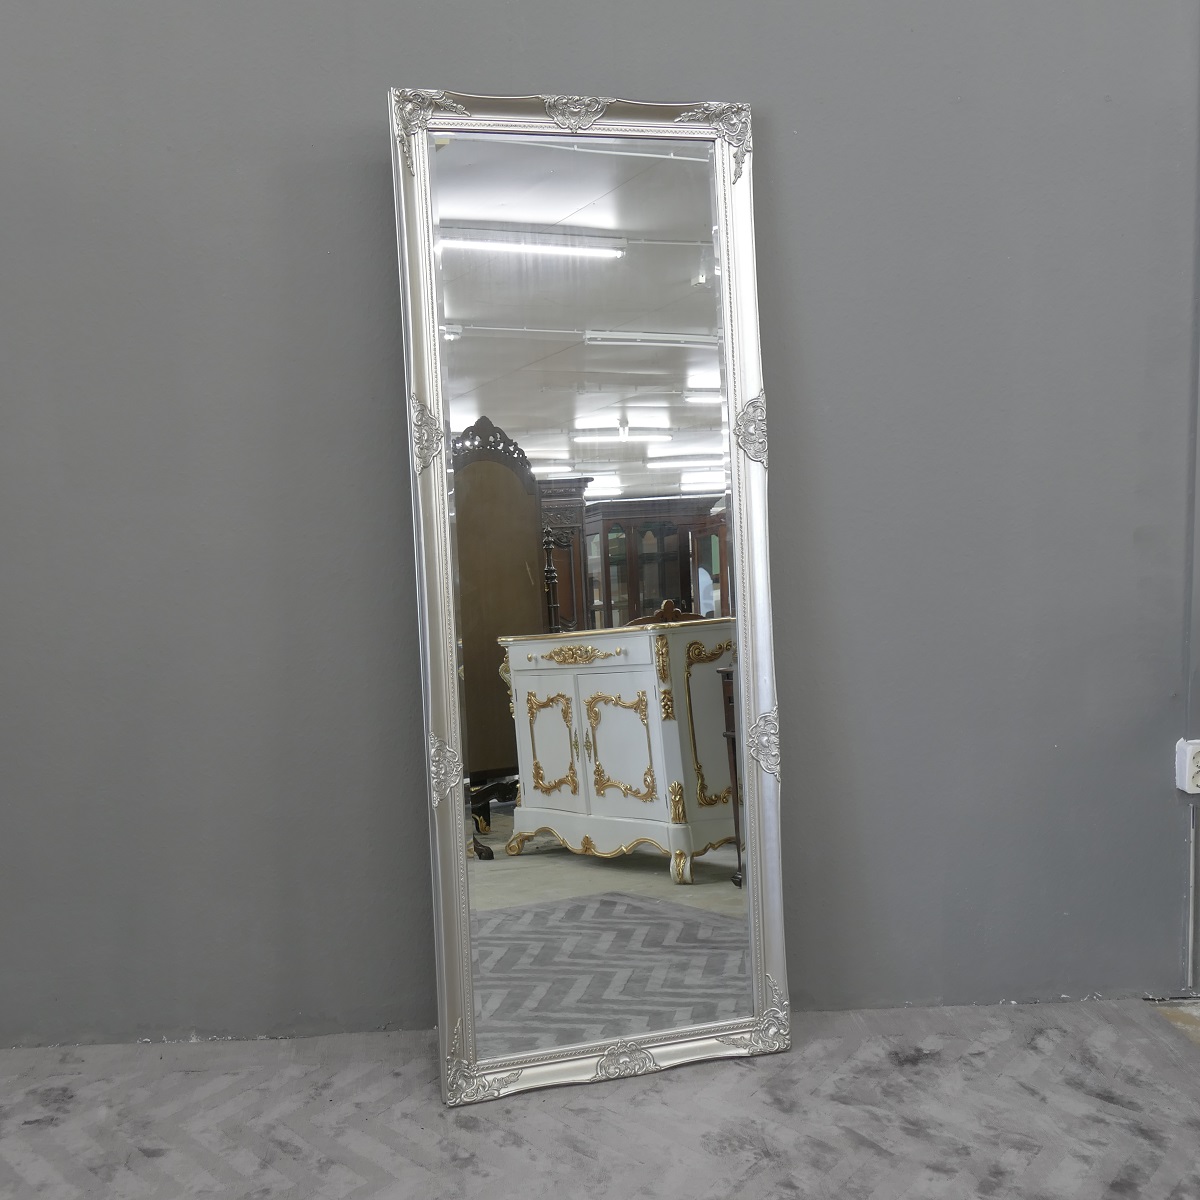 Grosser Spiegel Wandspiegel Farbe Shiny Silber mit Facettenschliff 70 x 185 cm